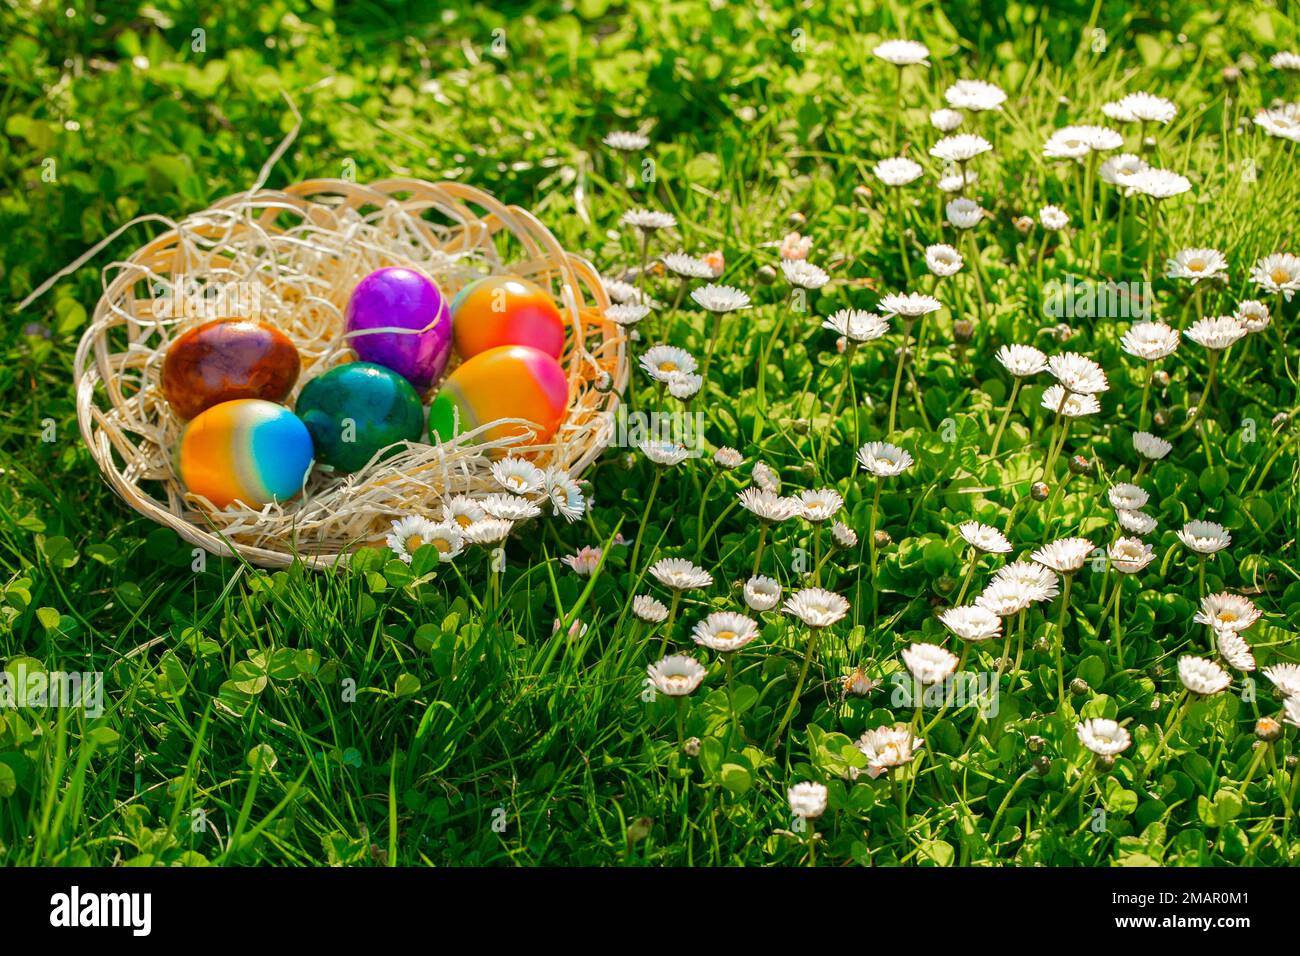 Caccia all'uovo di Pasqua la mano dei bambini mette le uova colorate in un cestino di vimini in un prato con la tradizione di festa di daisies.Easter. Foto Stock